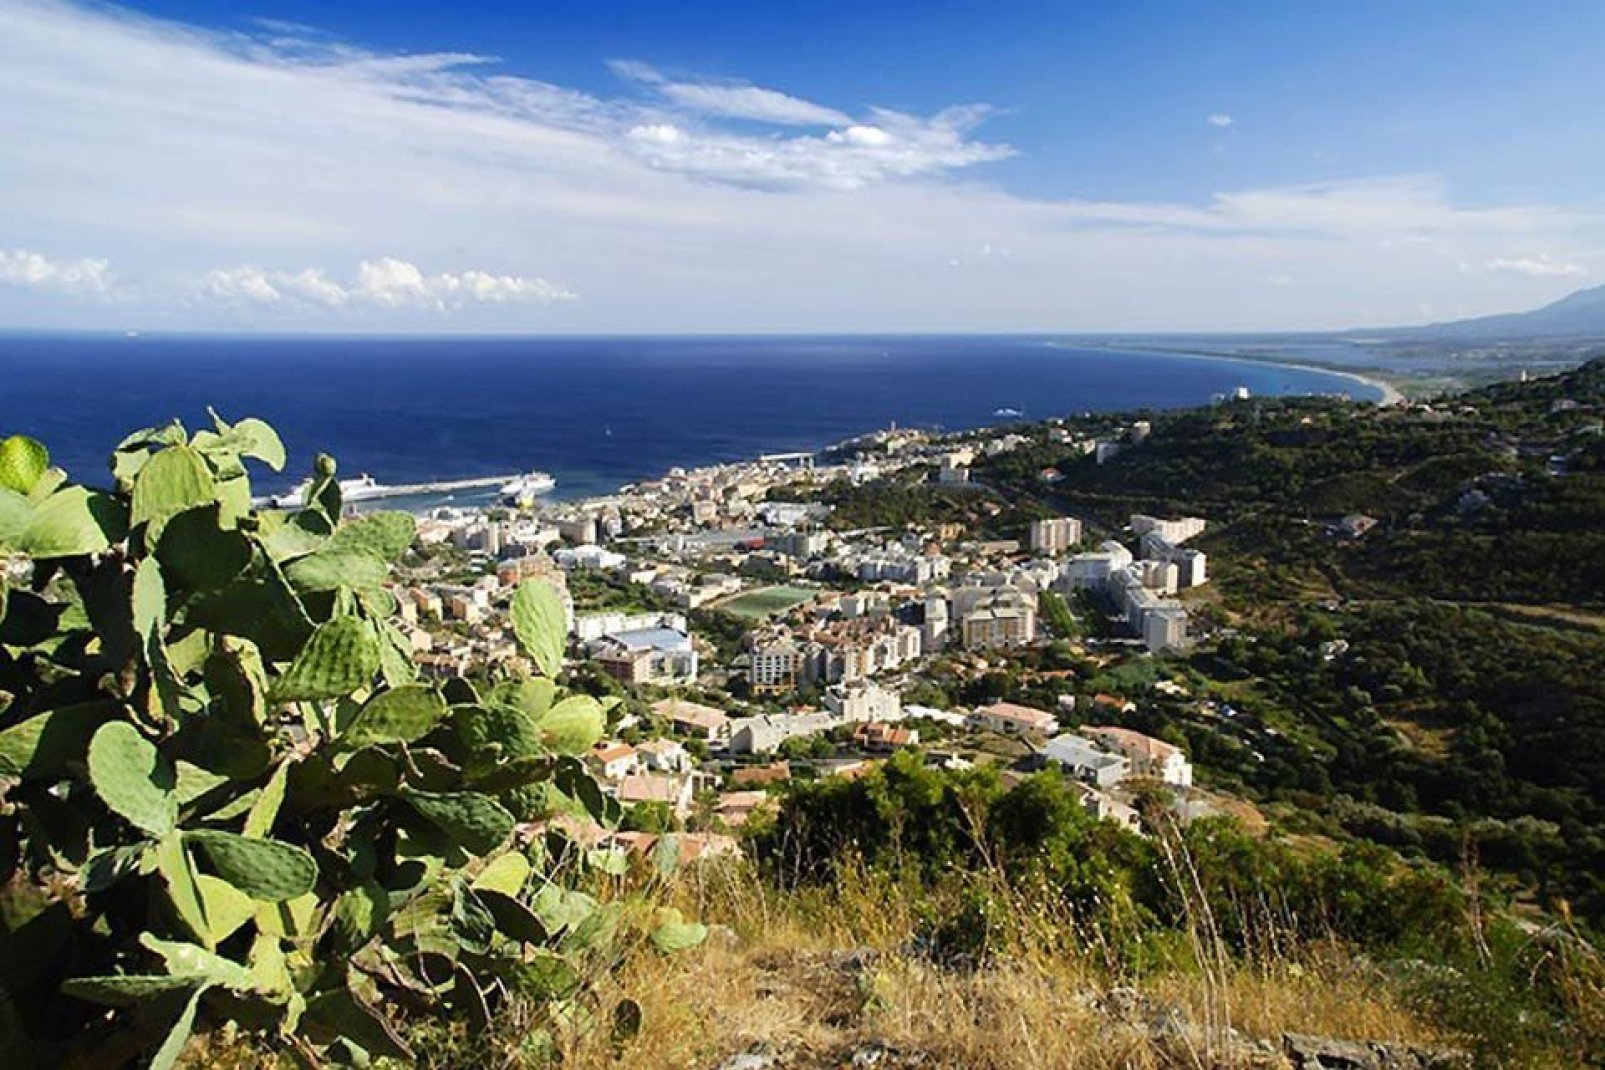 La città bassa di Bastia si estende lungo la costa. Vi si trovano il porto mediterraneo e le stradine pittoresche.